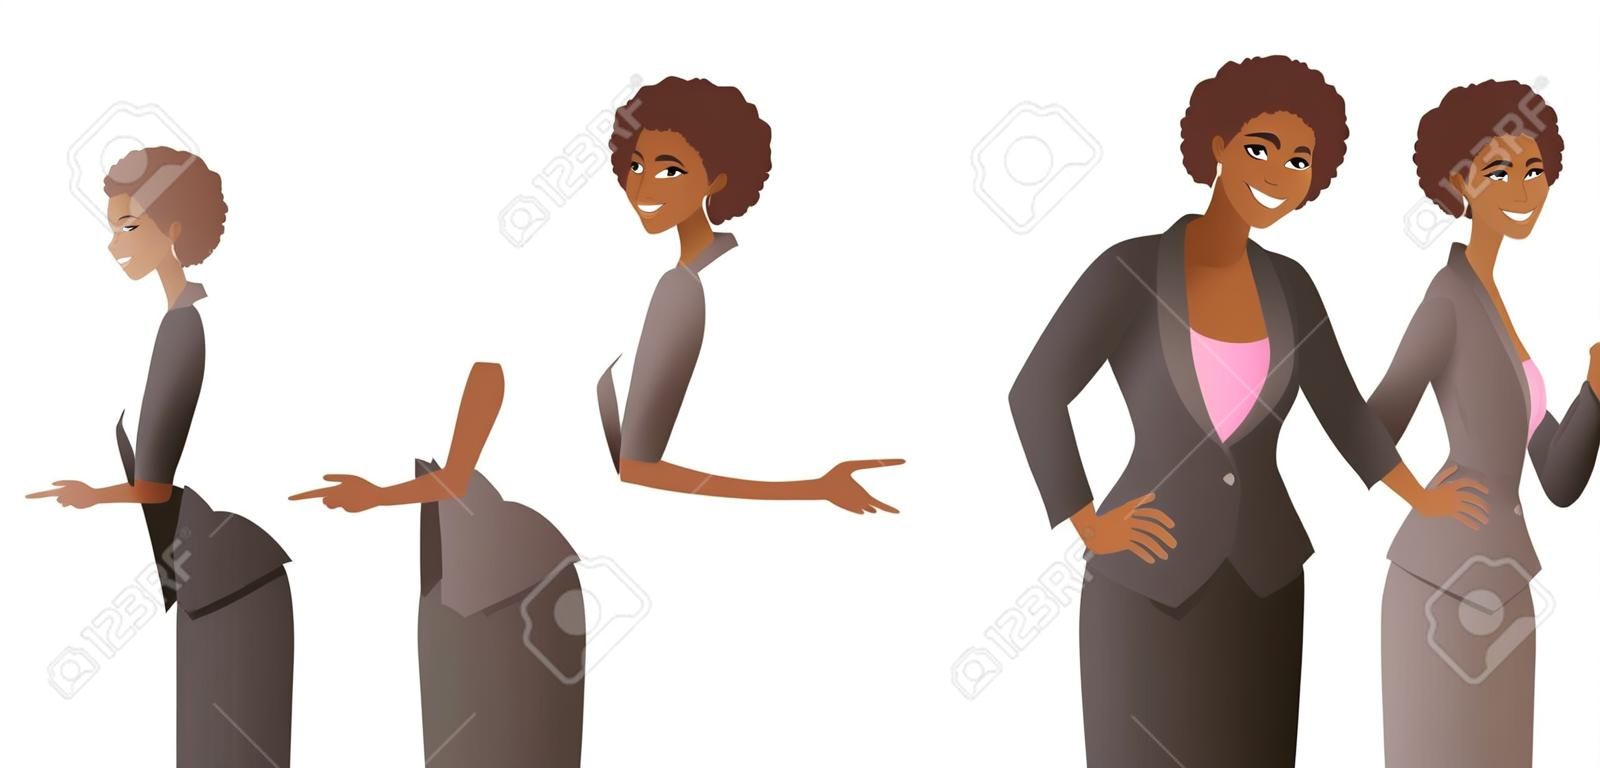 La donna africana che indossa la tuta indica qualcosa. Giovani donne sveglie sorridenti con il puntatore e il gesto dimostrativo. Illustrazione vettoriale isolata su sfondo bianco.